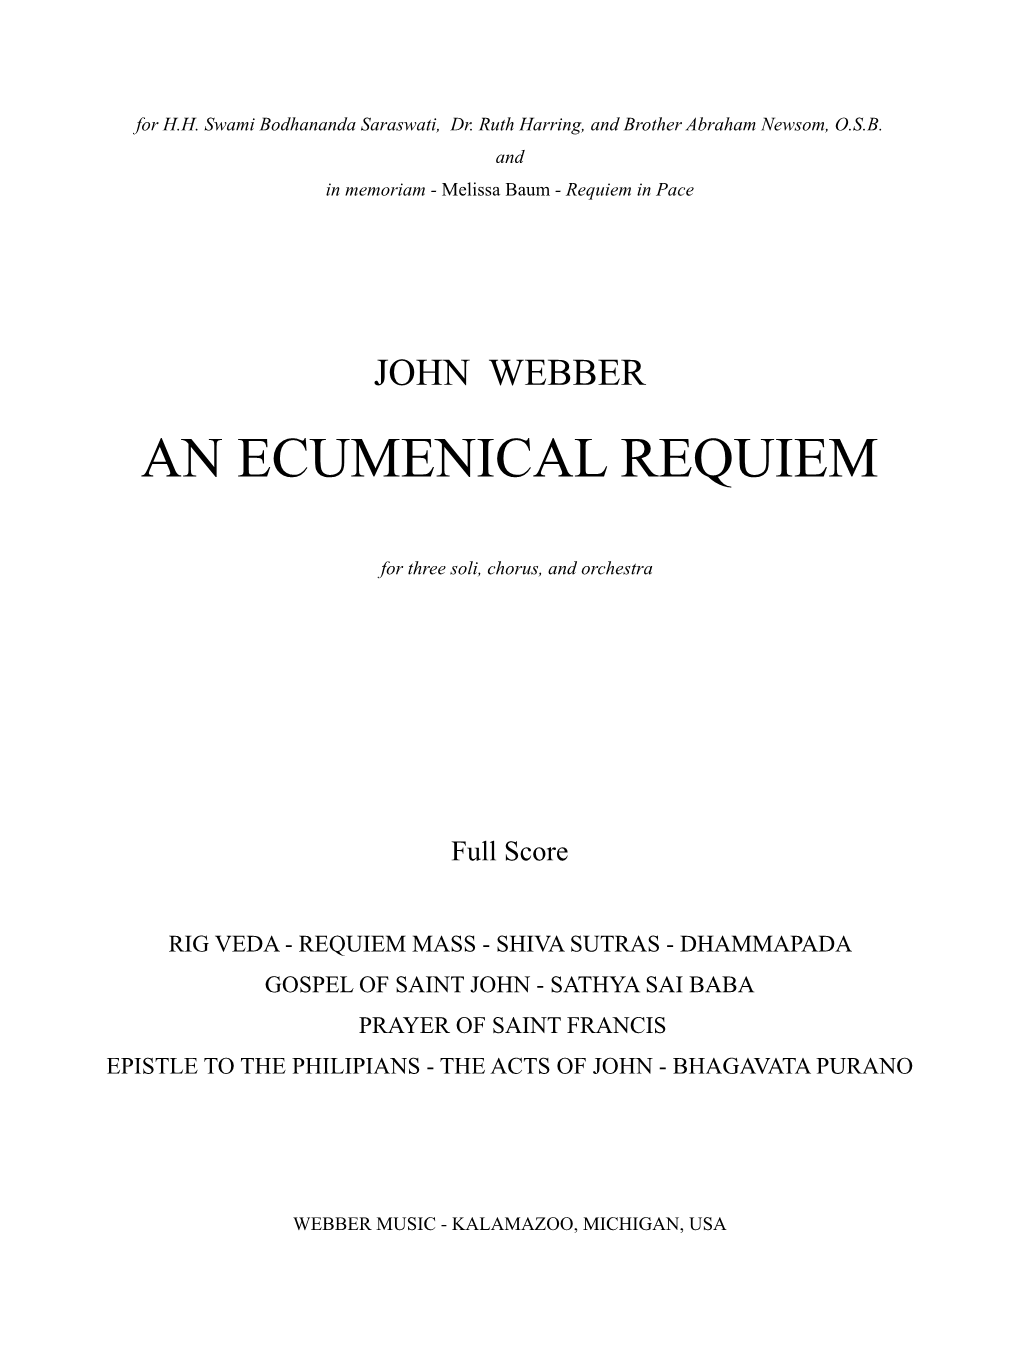 An Ecumenical Requiem